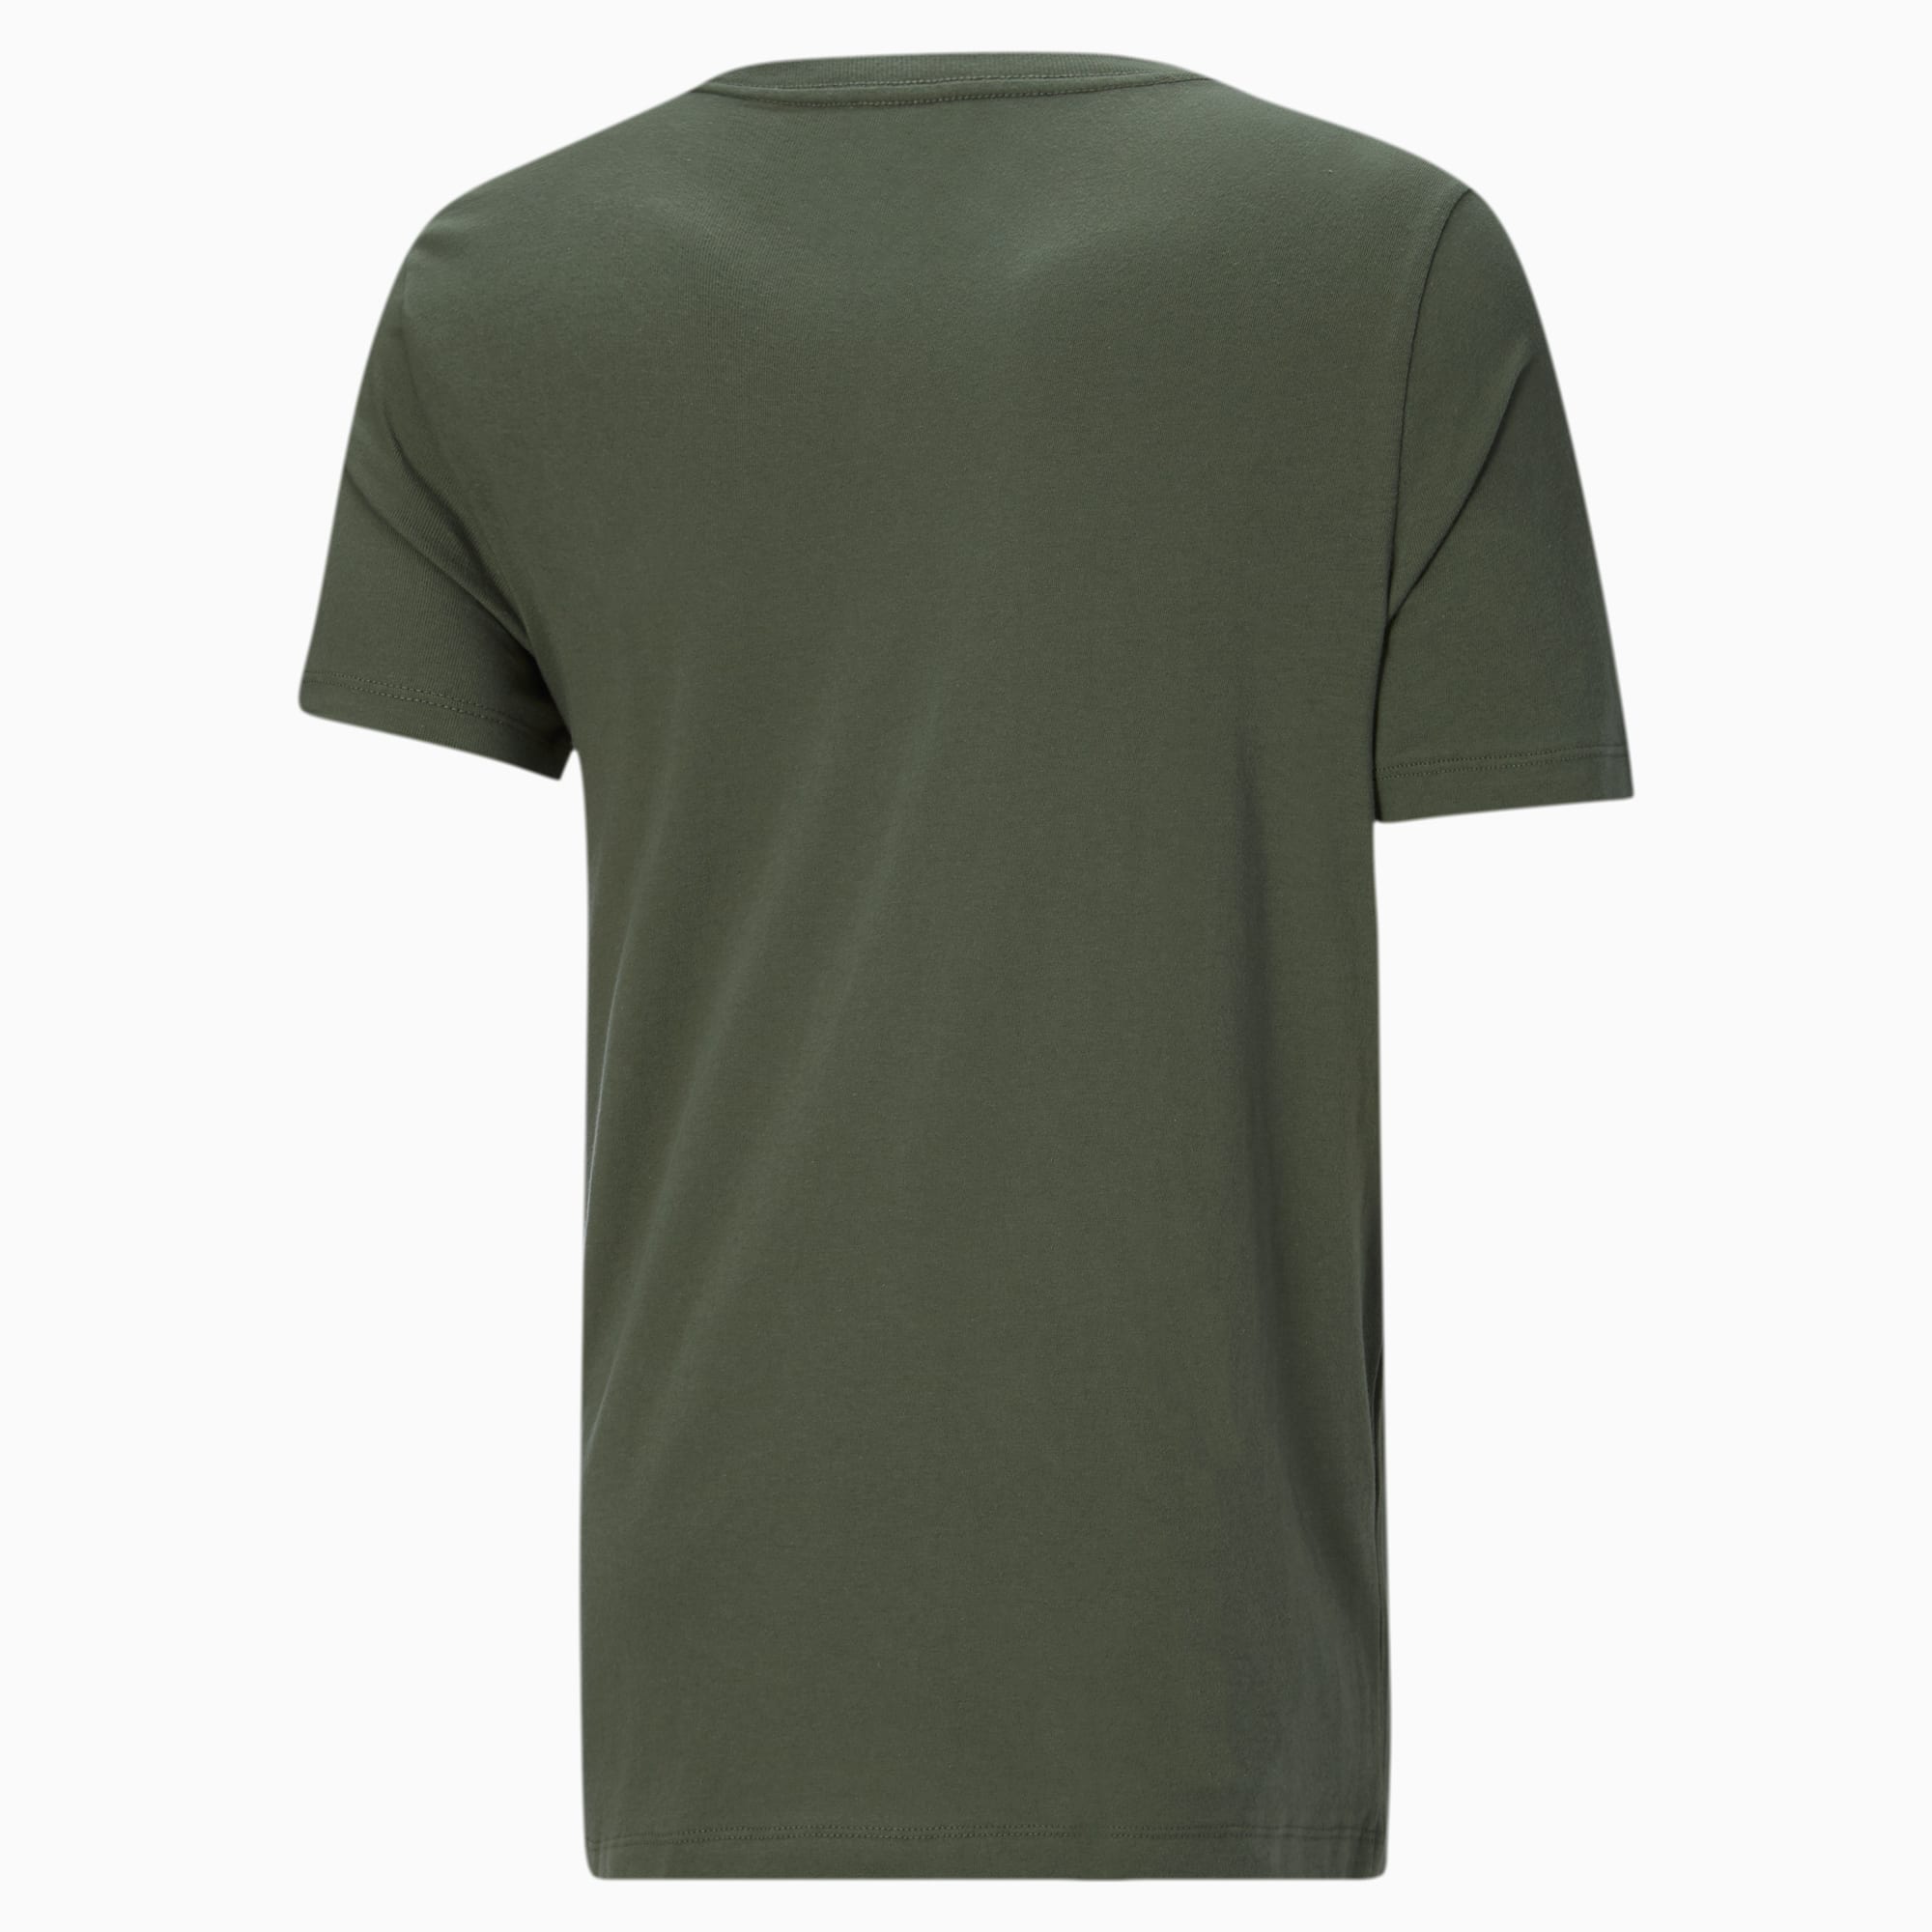 Puma - Men's Essential Camo Aop T-Shirt (848561 70)